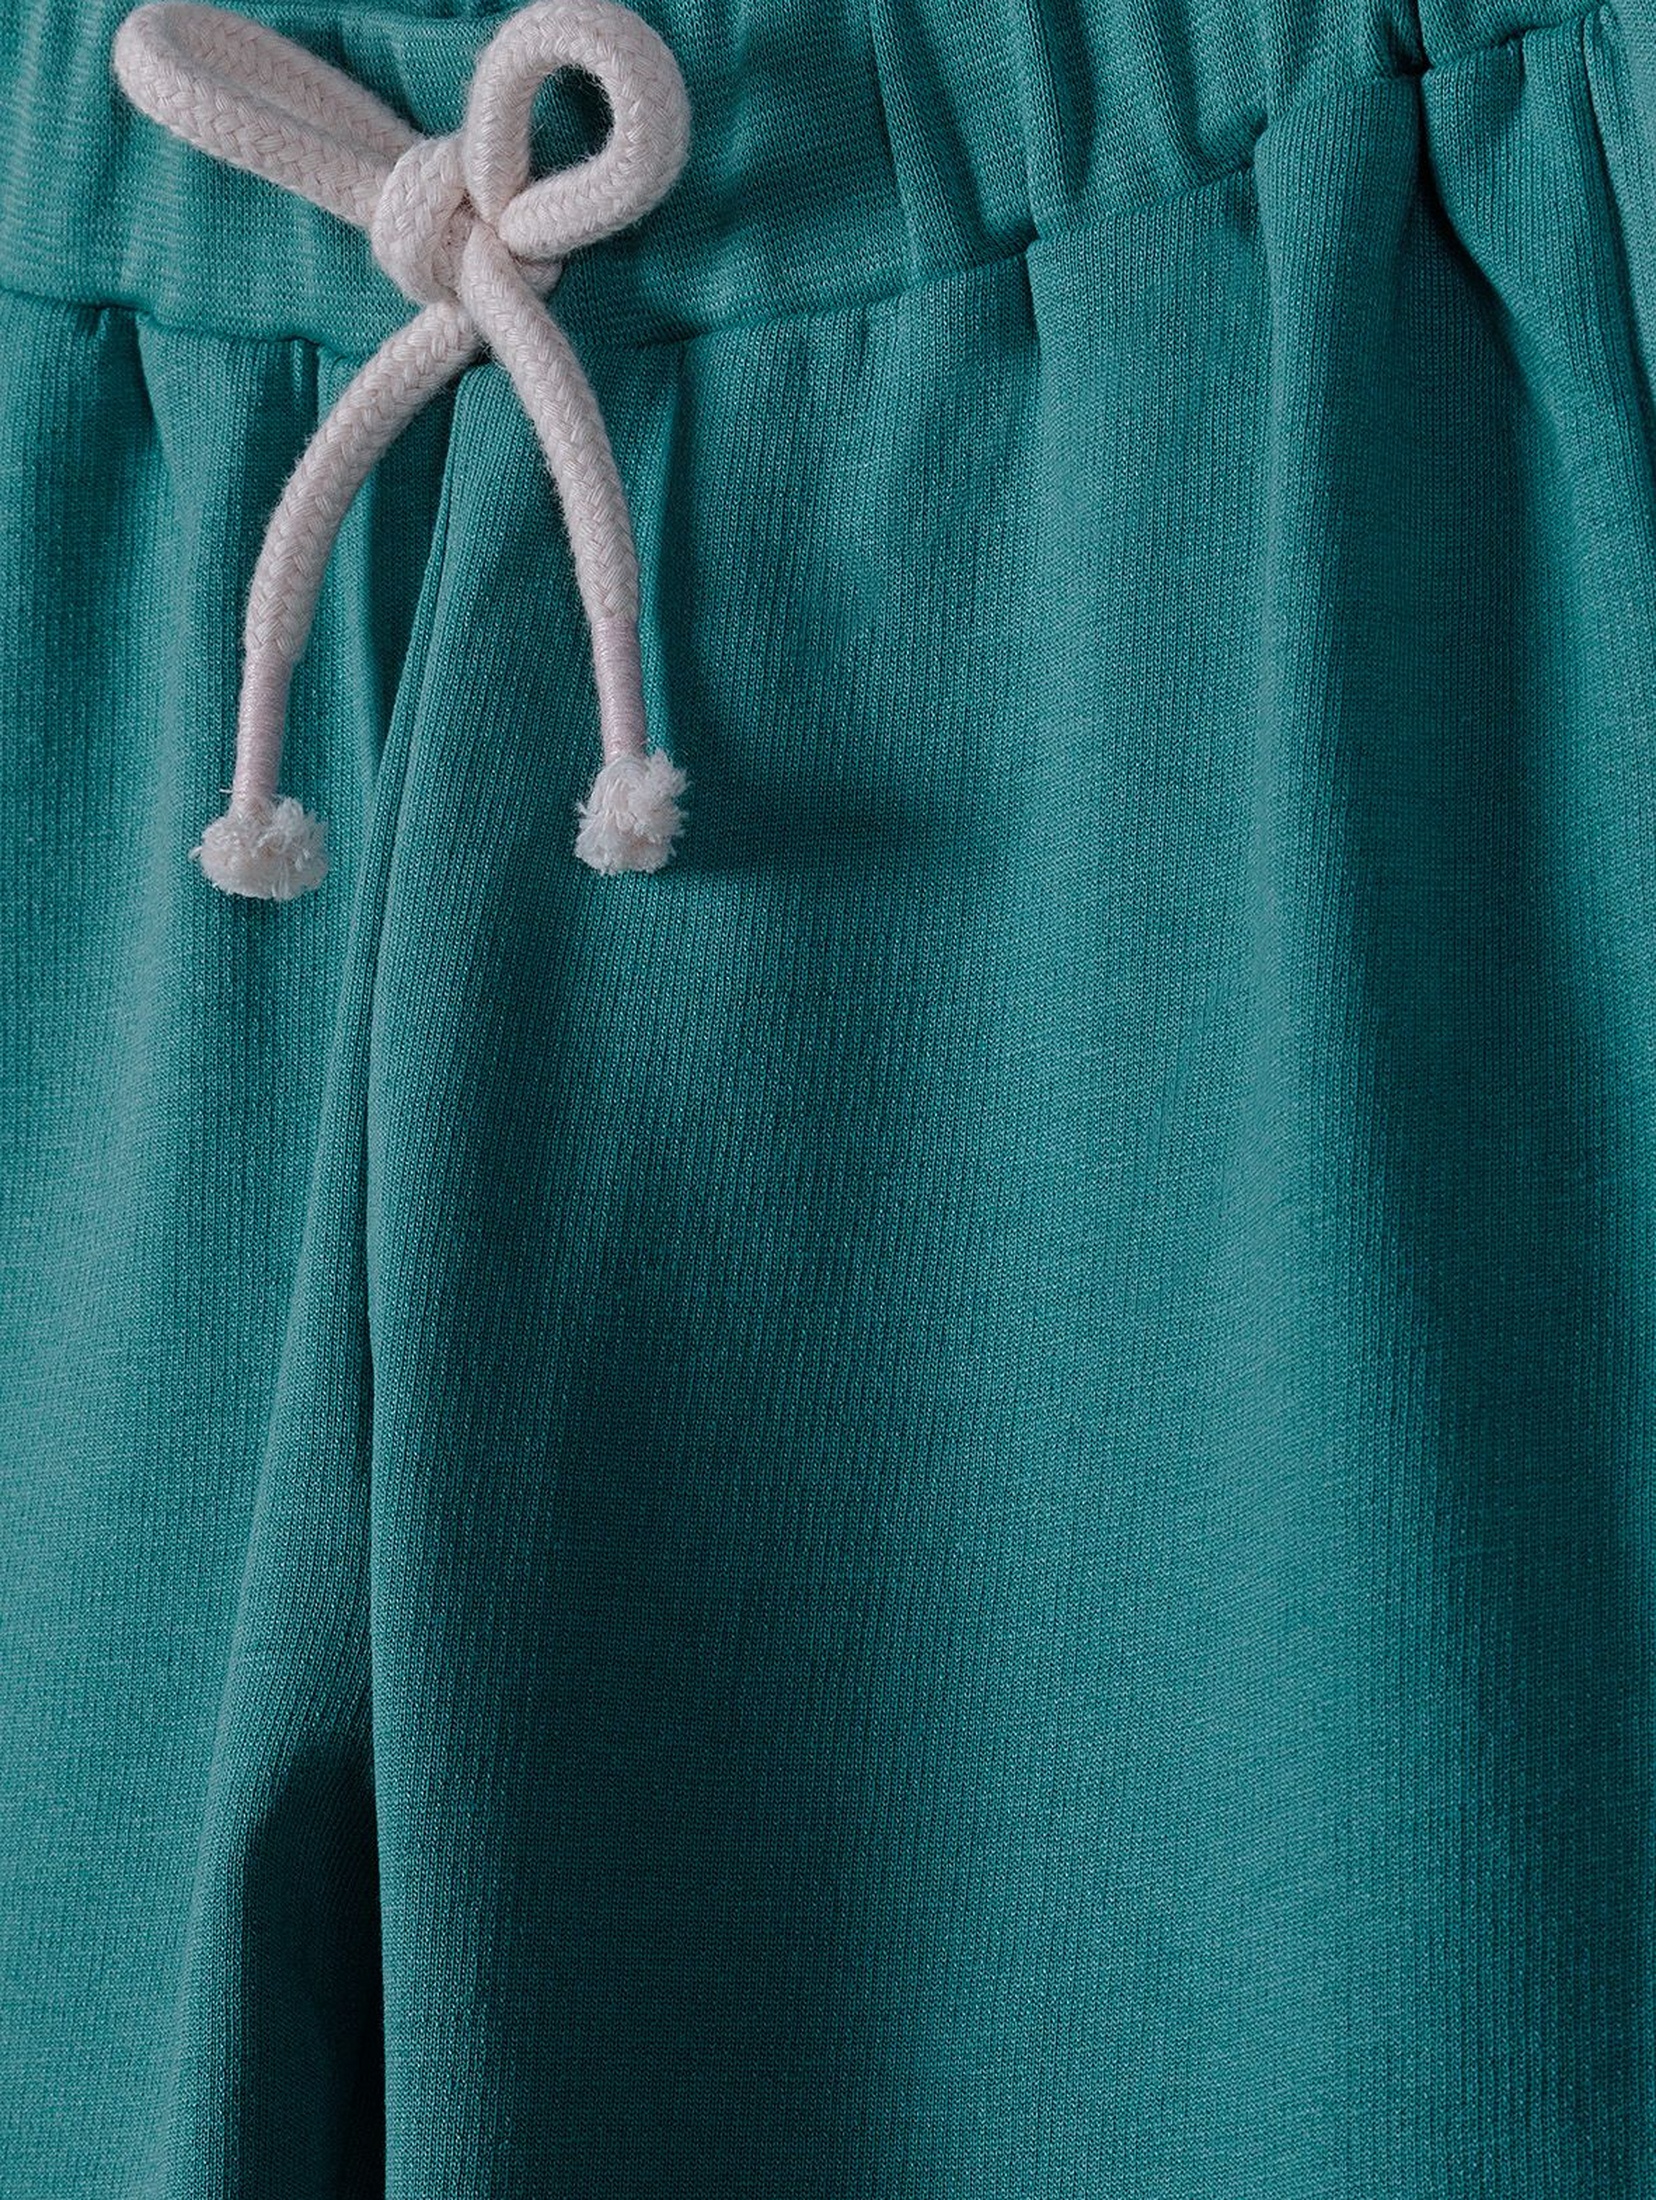 Spodnie dresowe dziewczęce z ozdobną kokardką - zielone